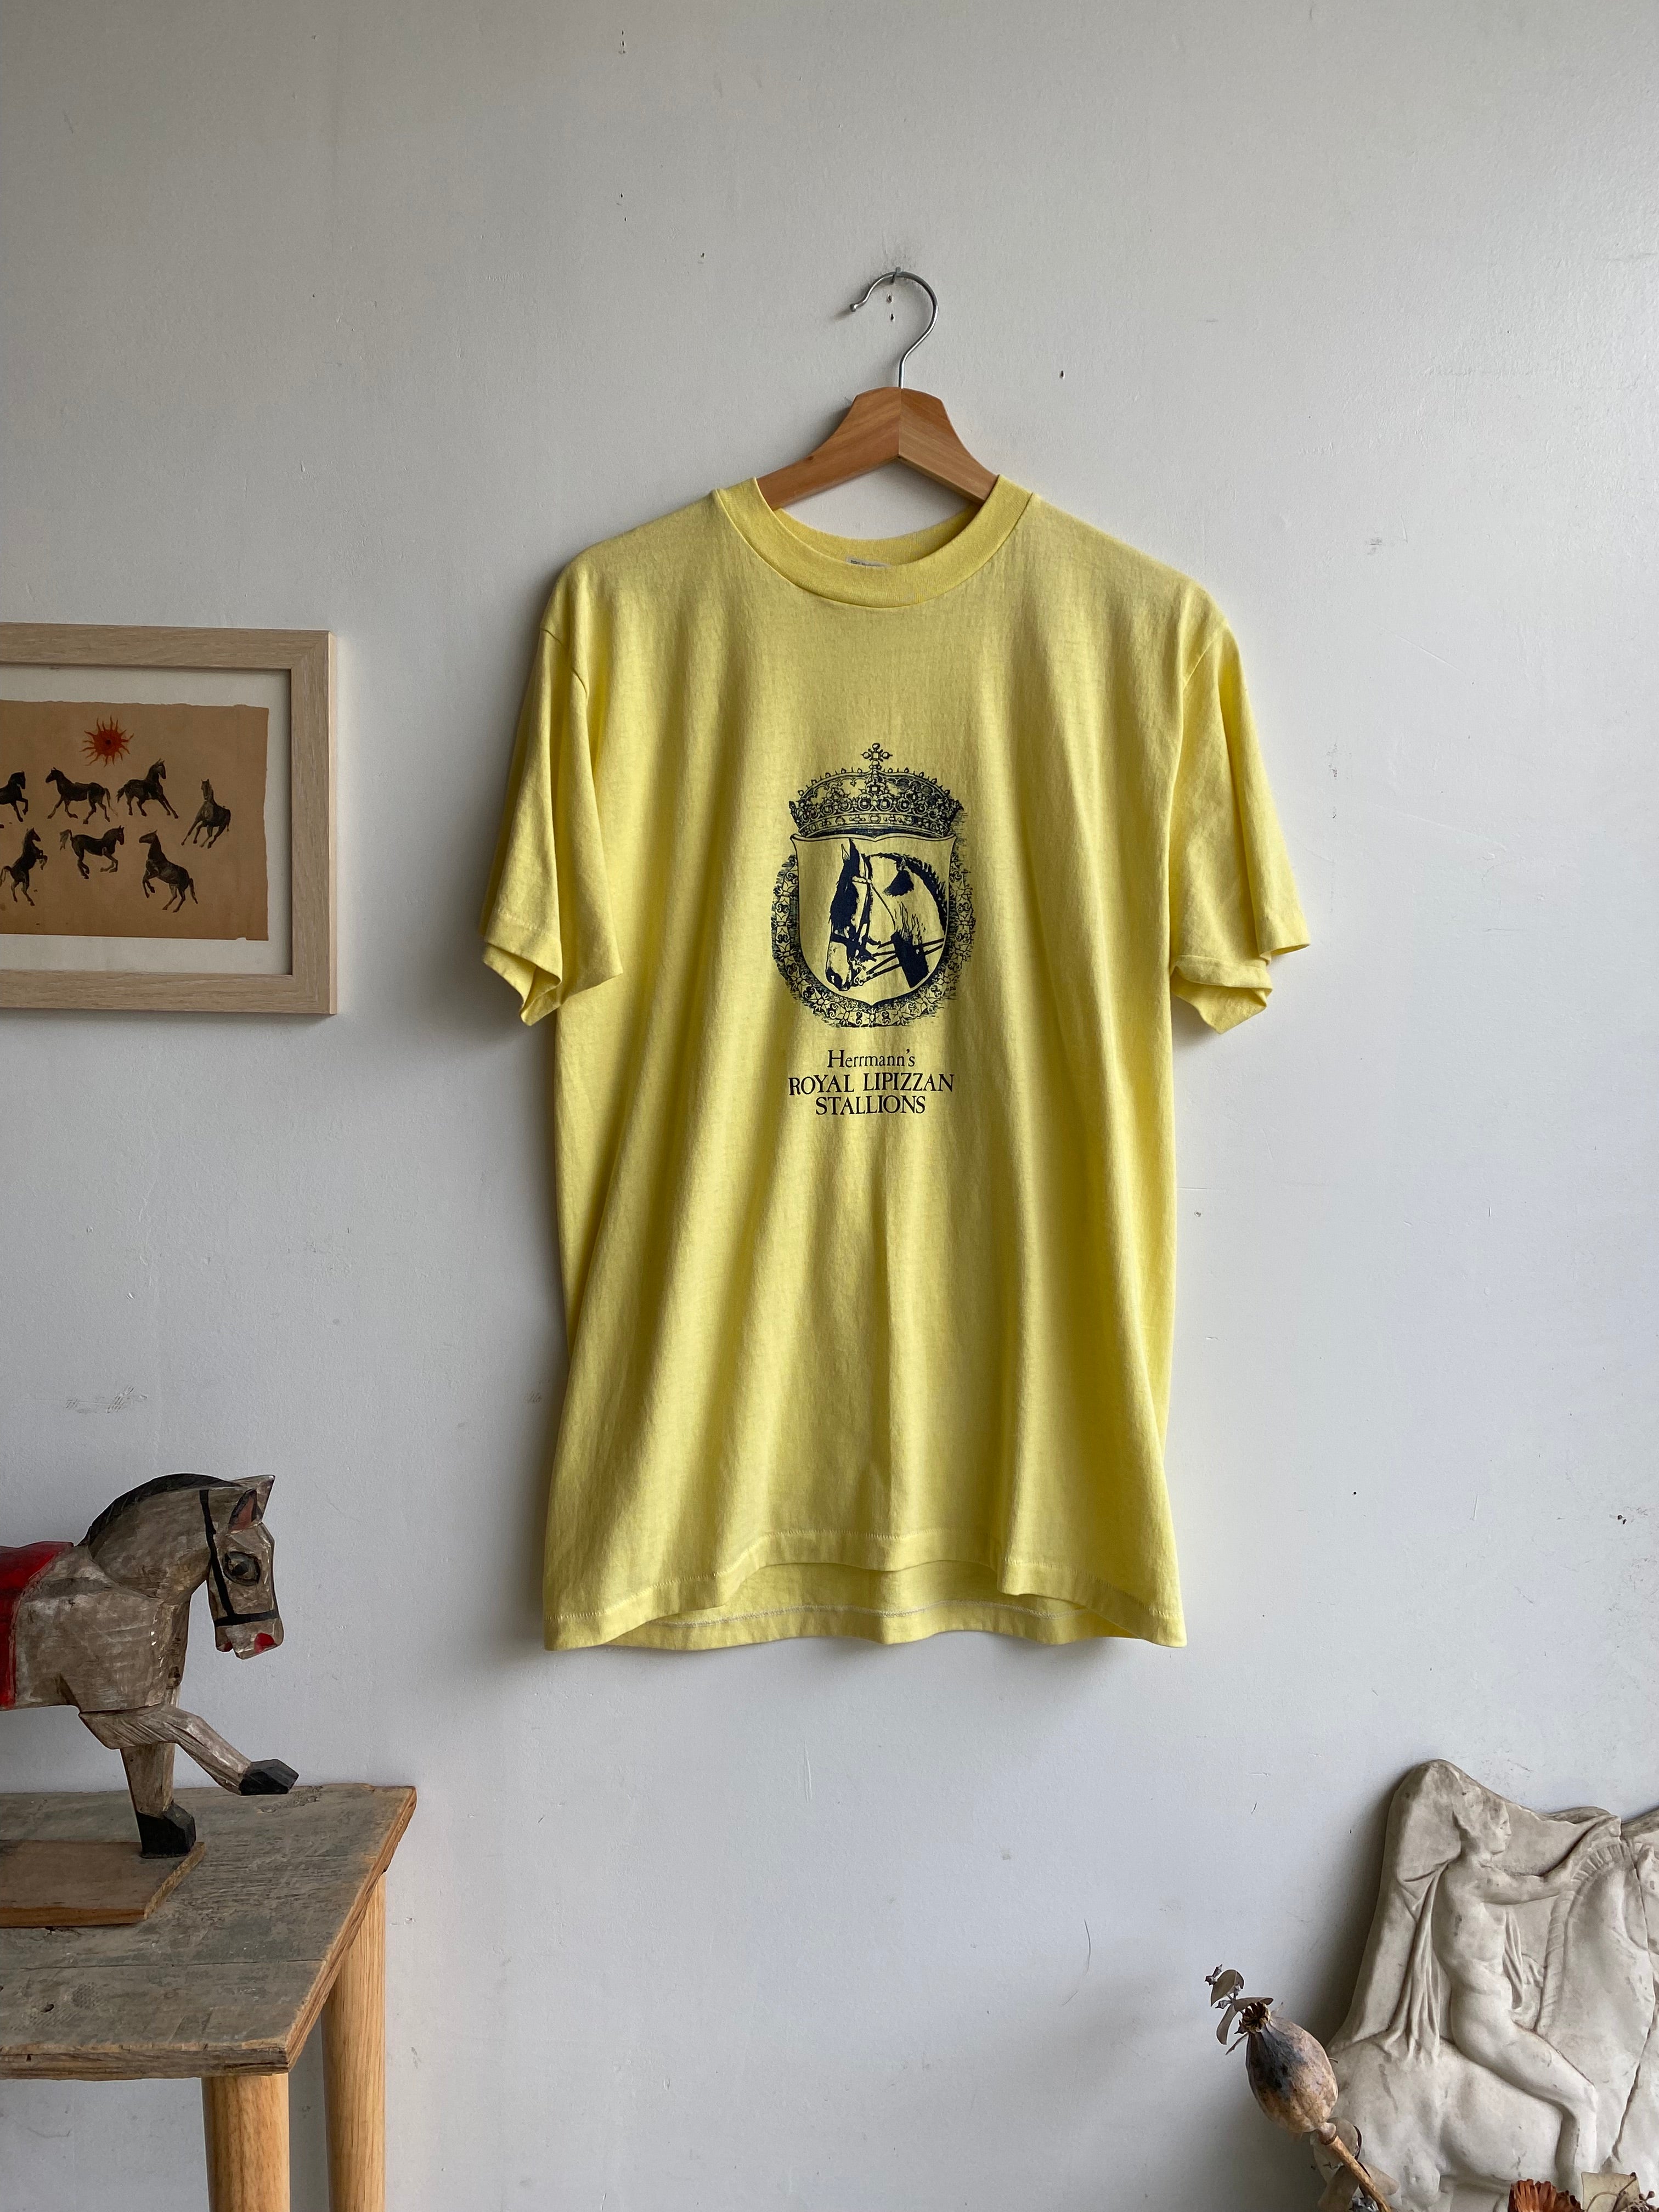 1980s Lipizzan Stallions T-Shirt (M/L)